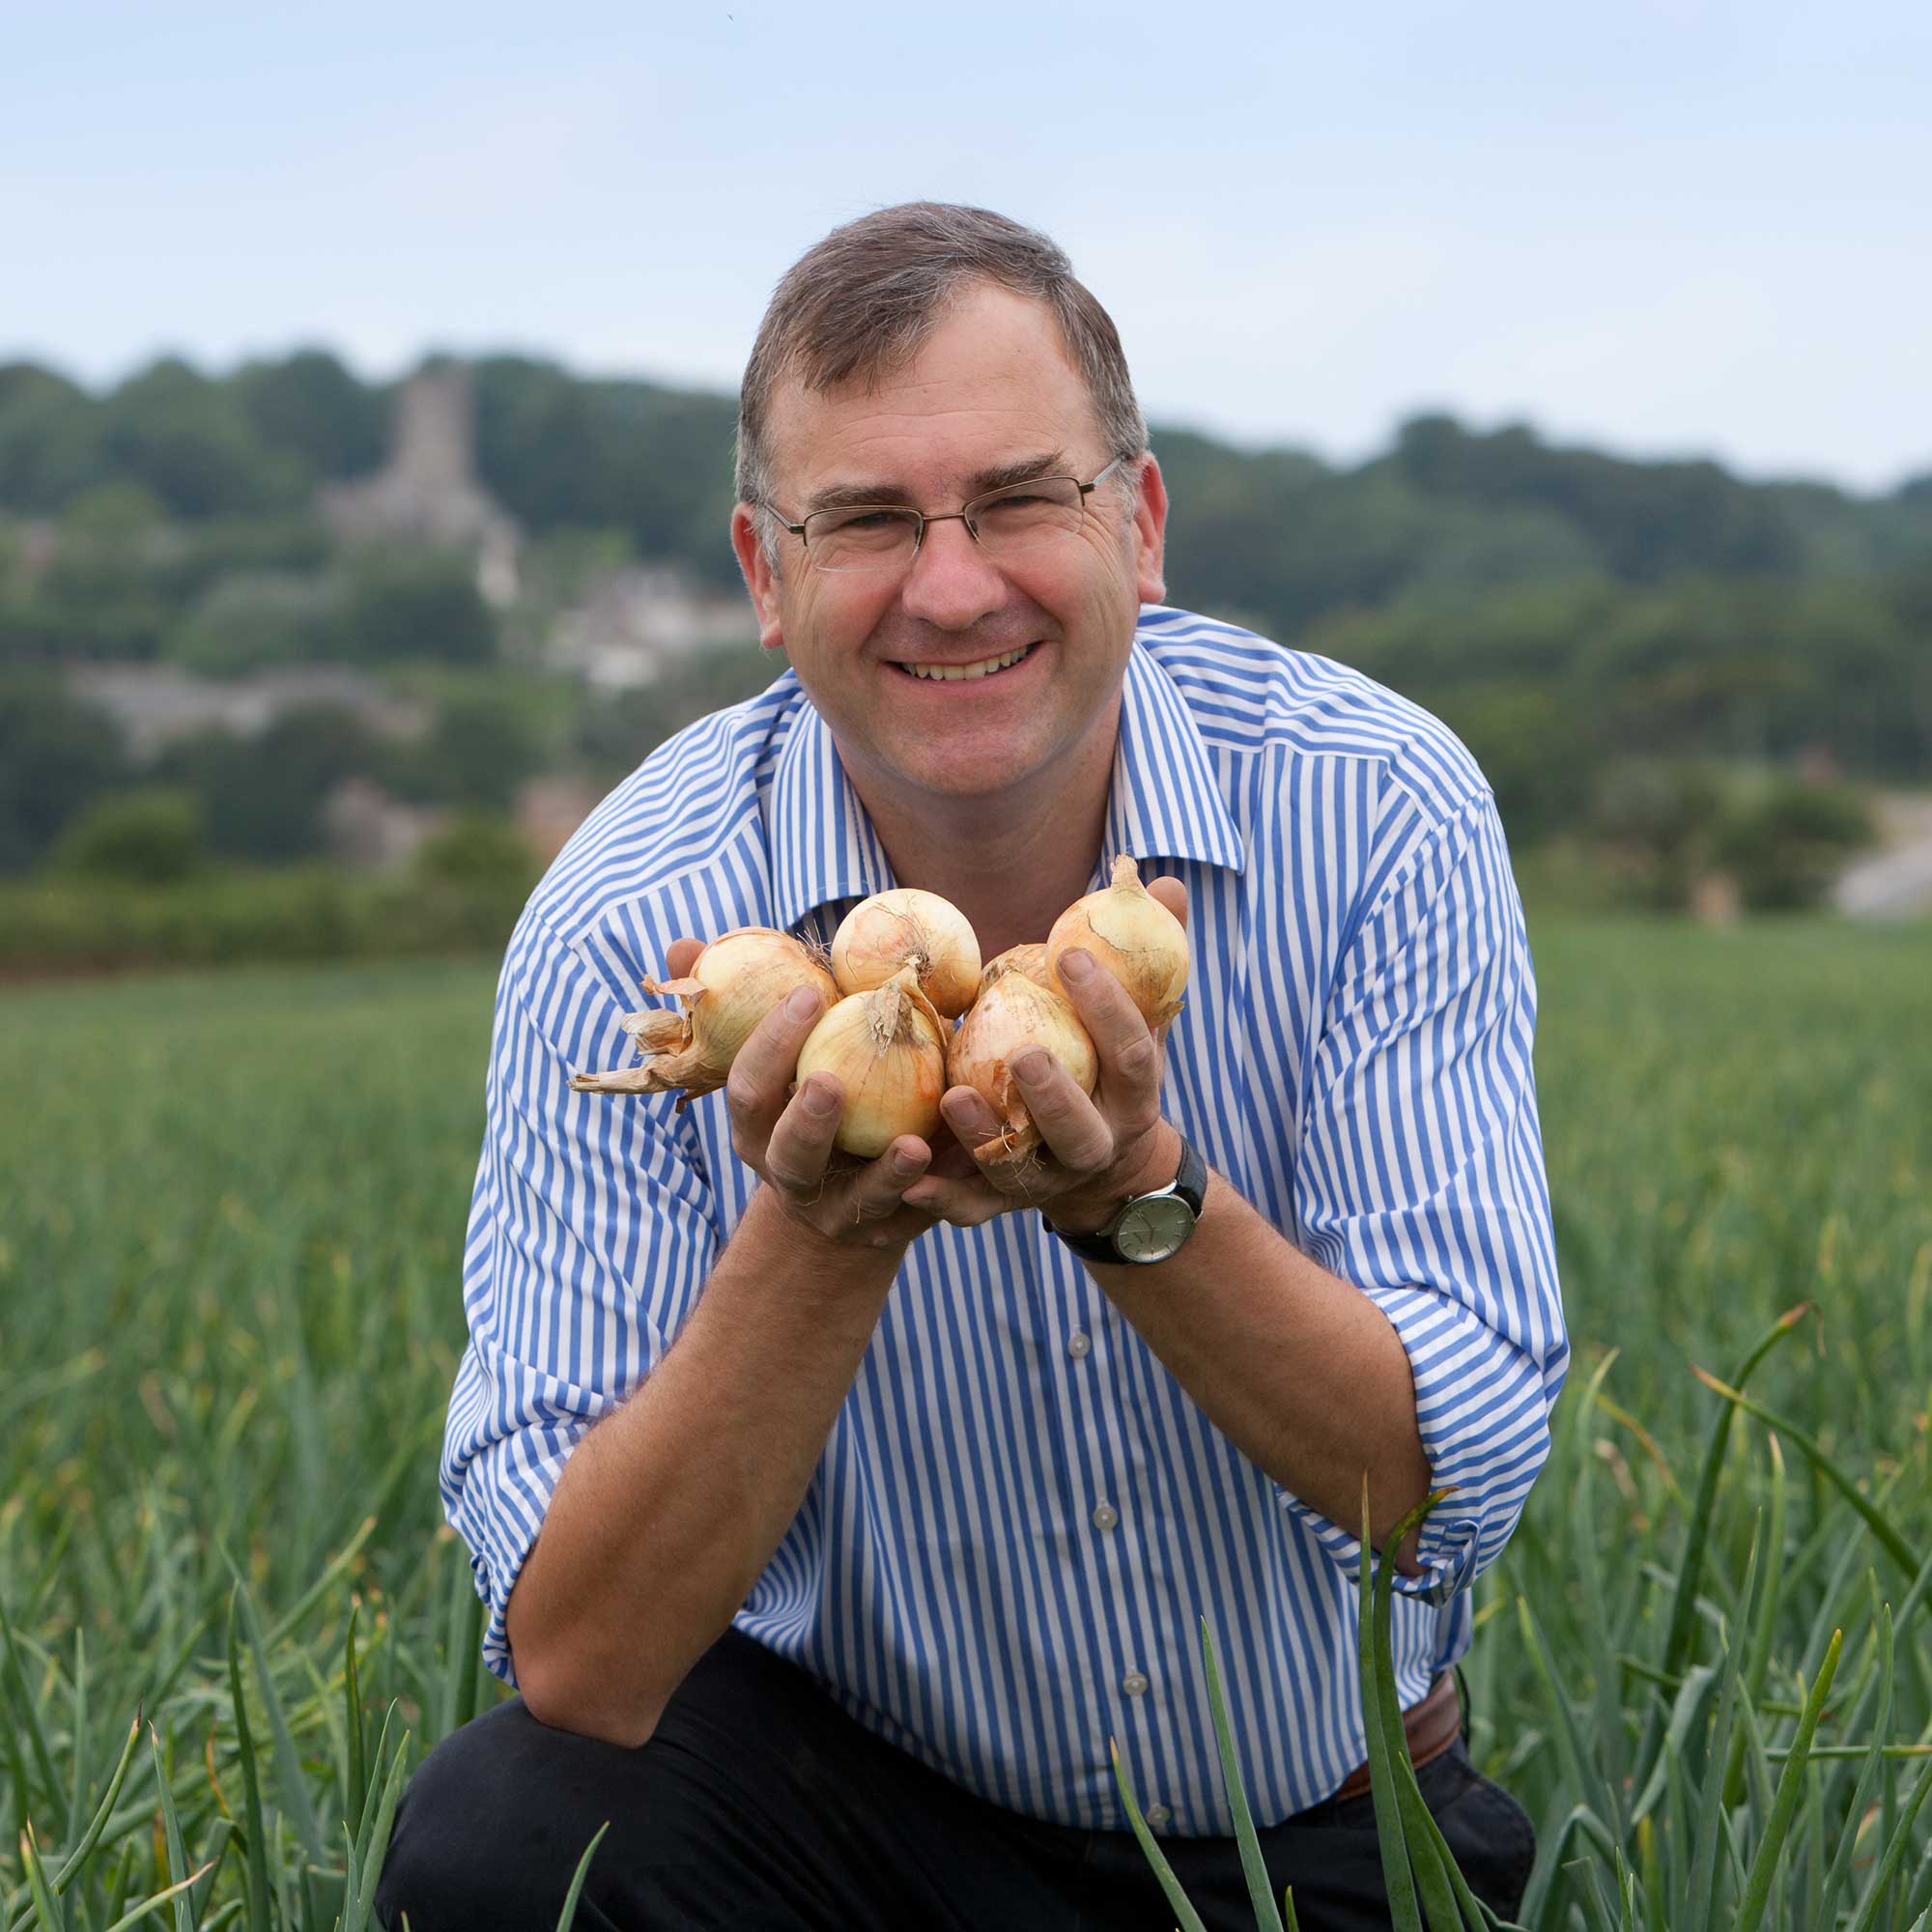 profile photo of Jeremy Oatley of Hay Farm in his field